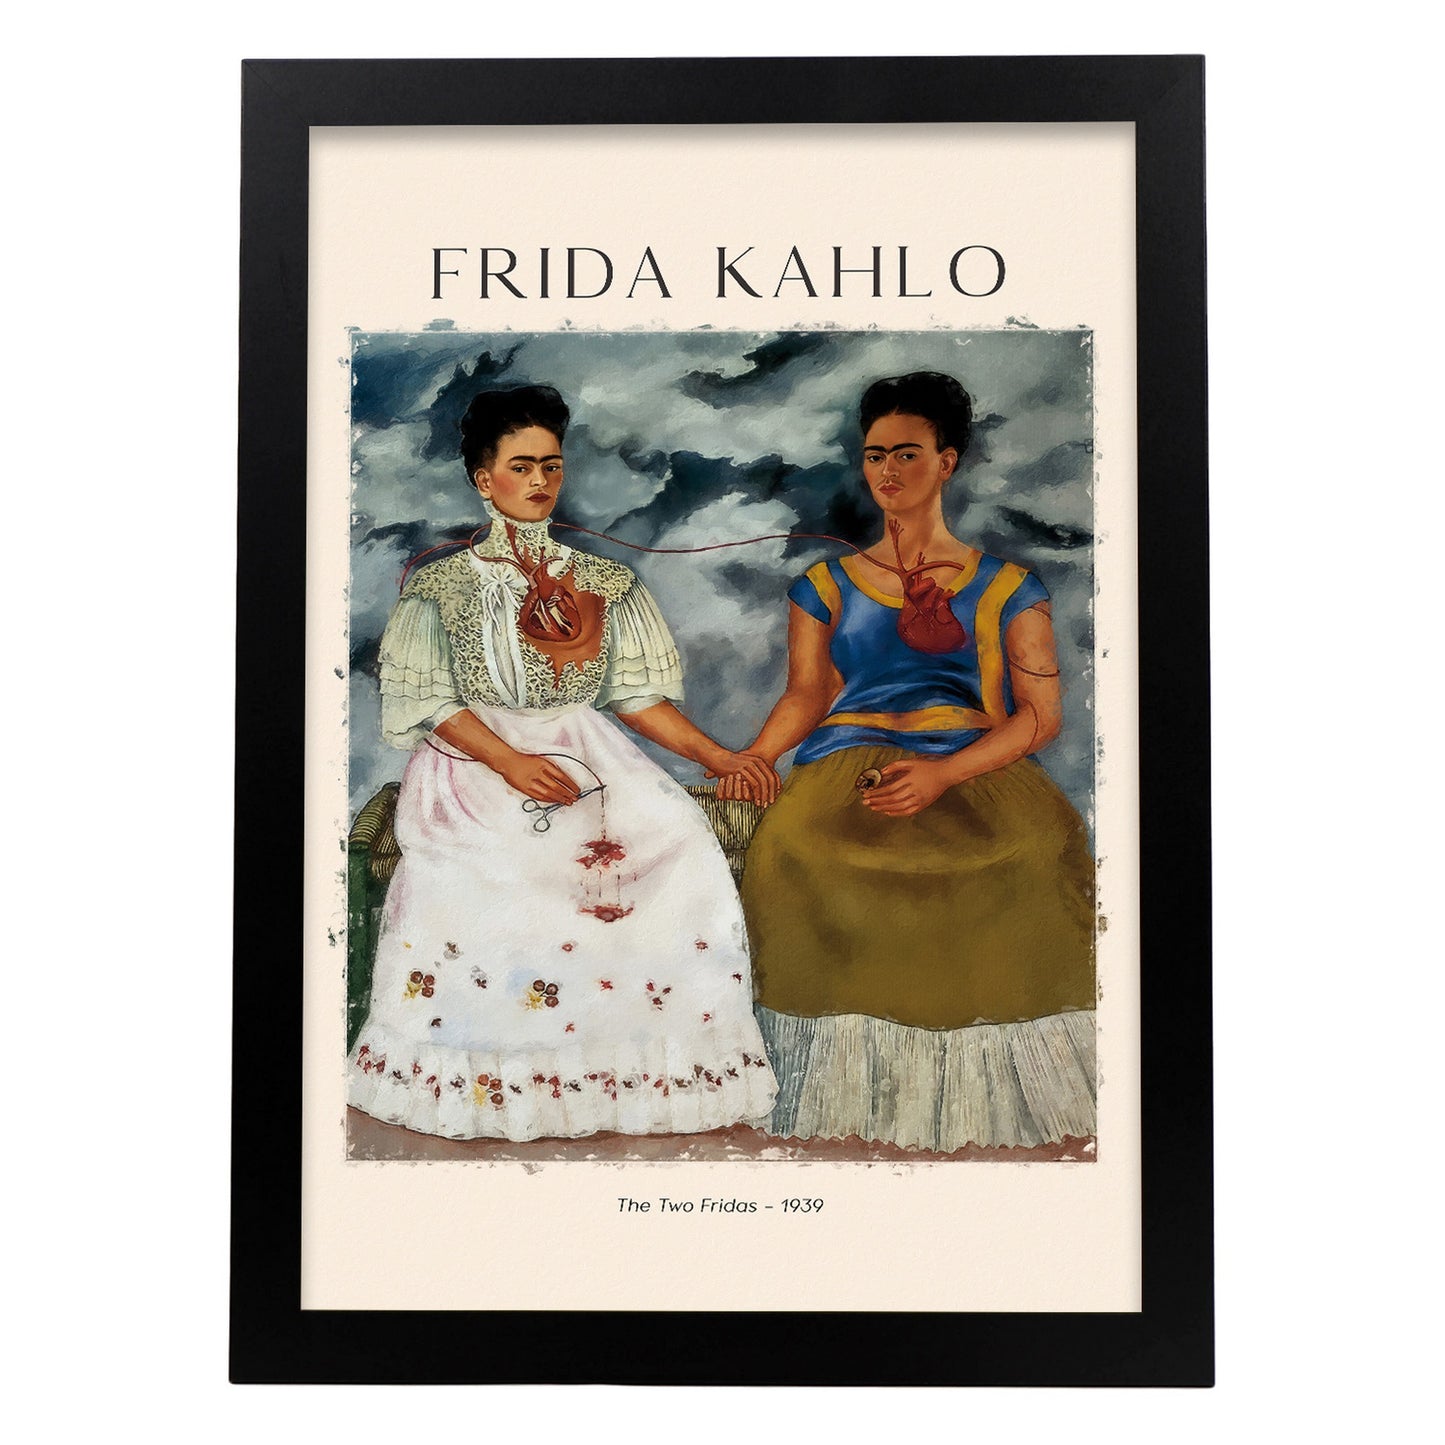 Lámina de Dos Fridas inspirada en Frida Kahlo para decoración hogar